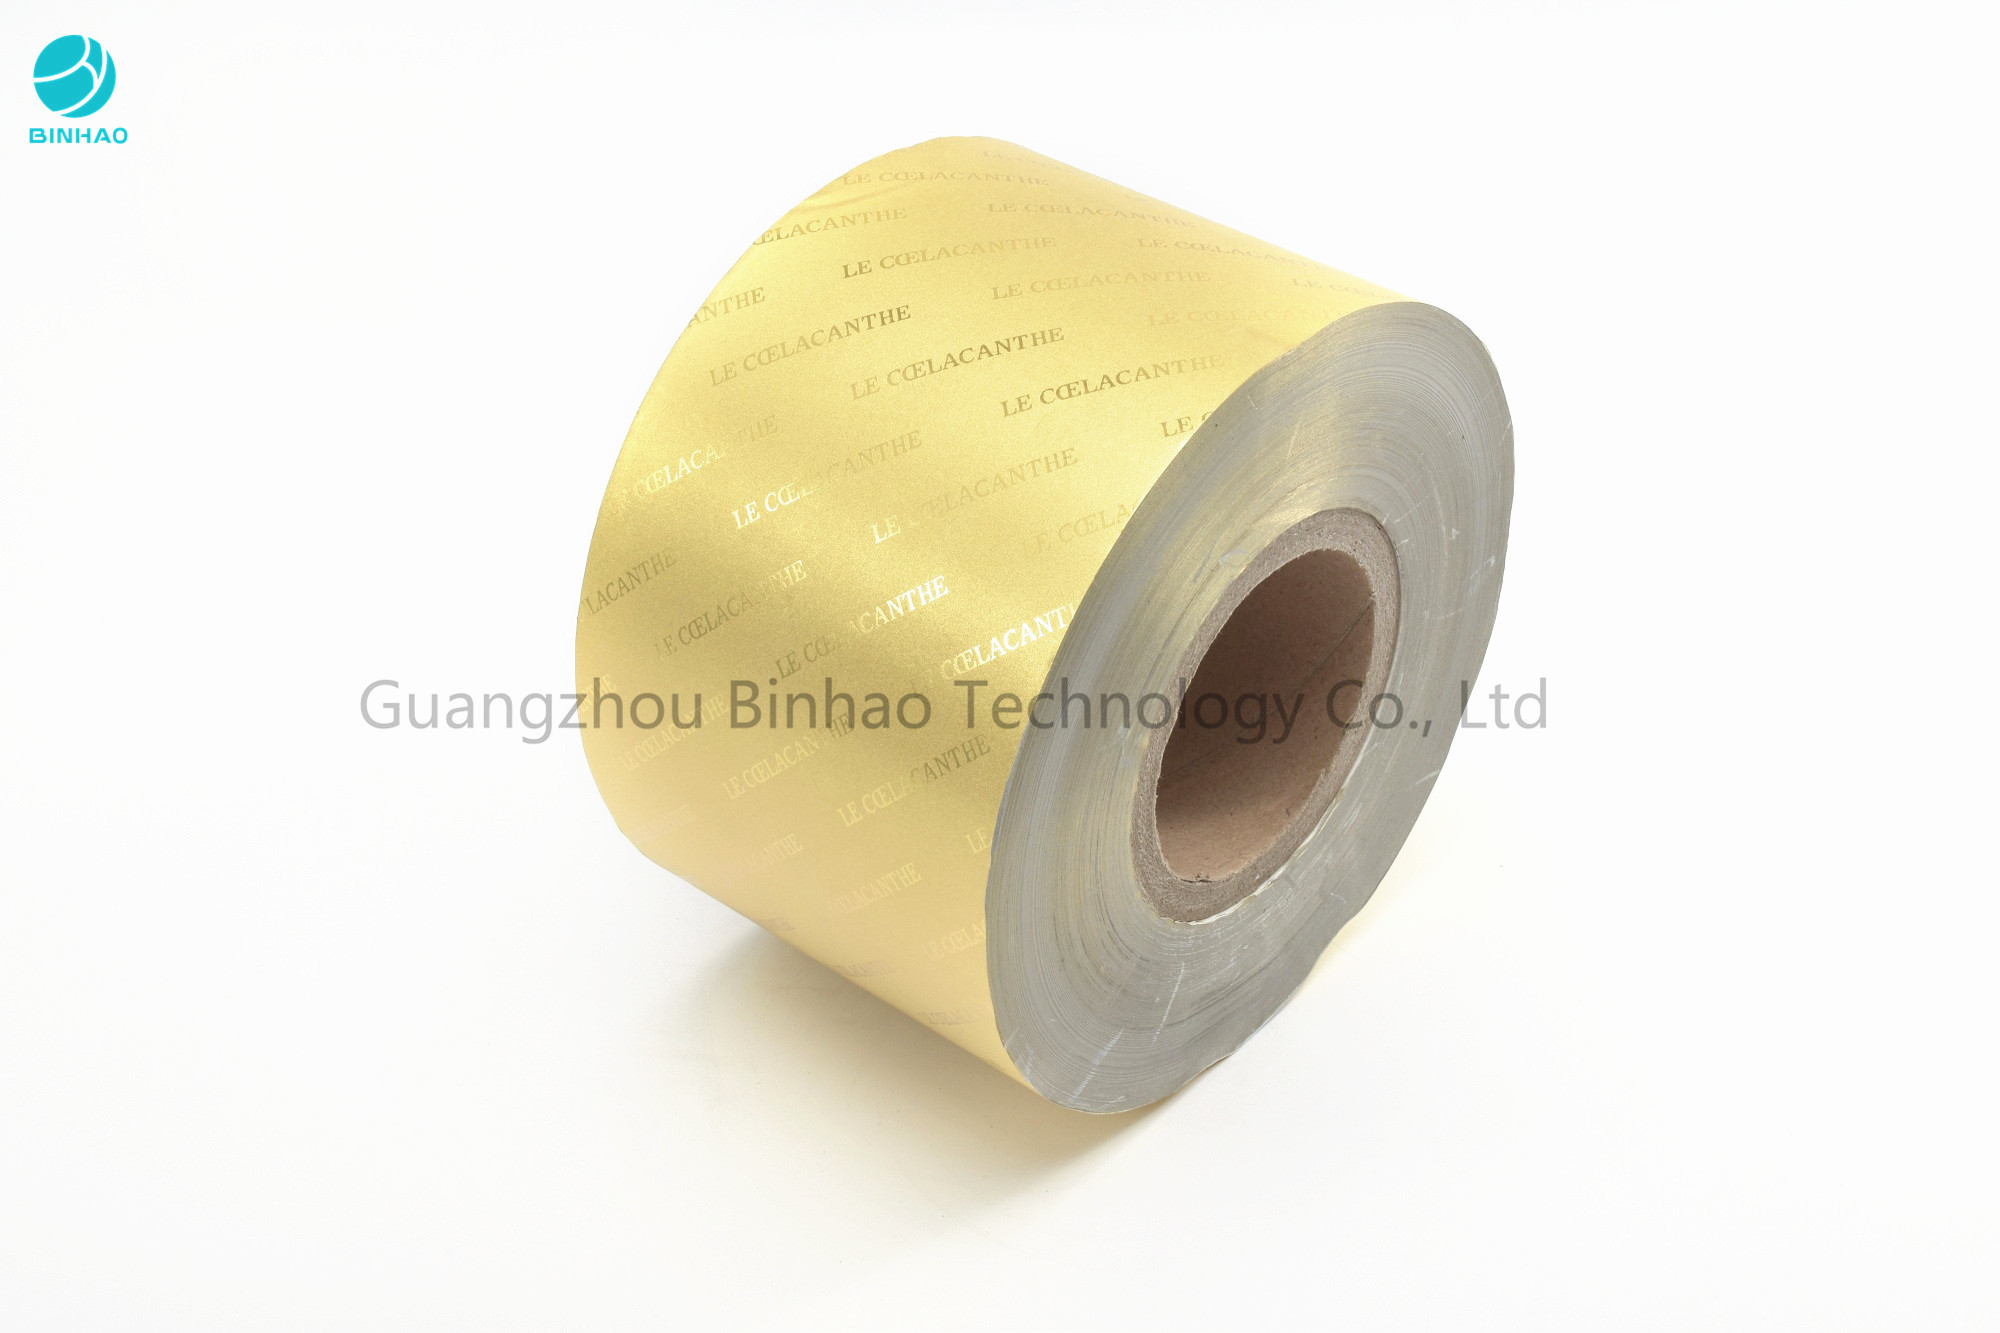 L'oro di goffratura di trasferimento argenta la carta del foglio di alluminio in 85/76 millimetri nell'imballaggio per alimenti della sigaretta